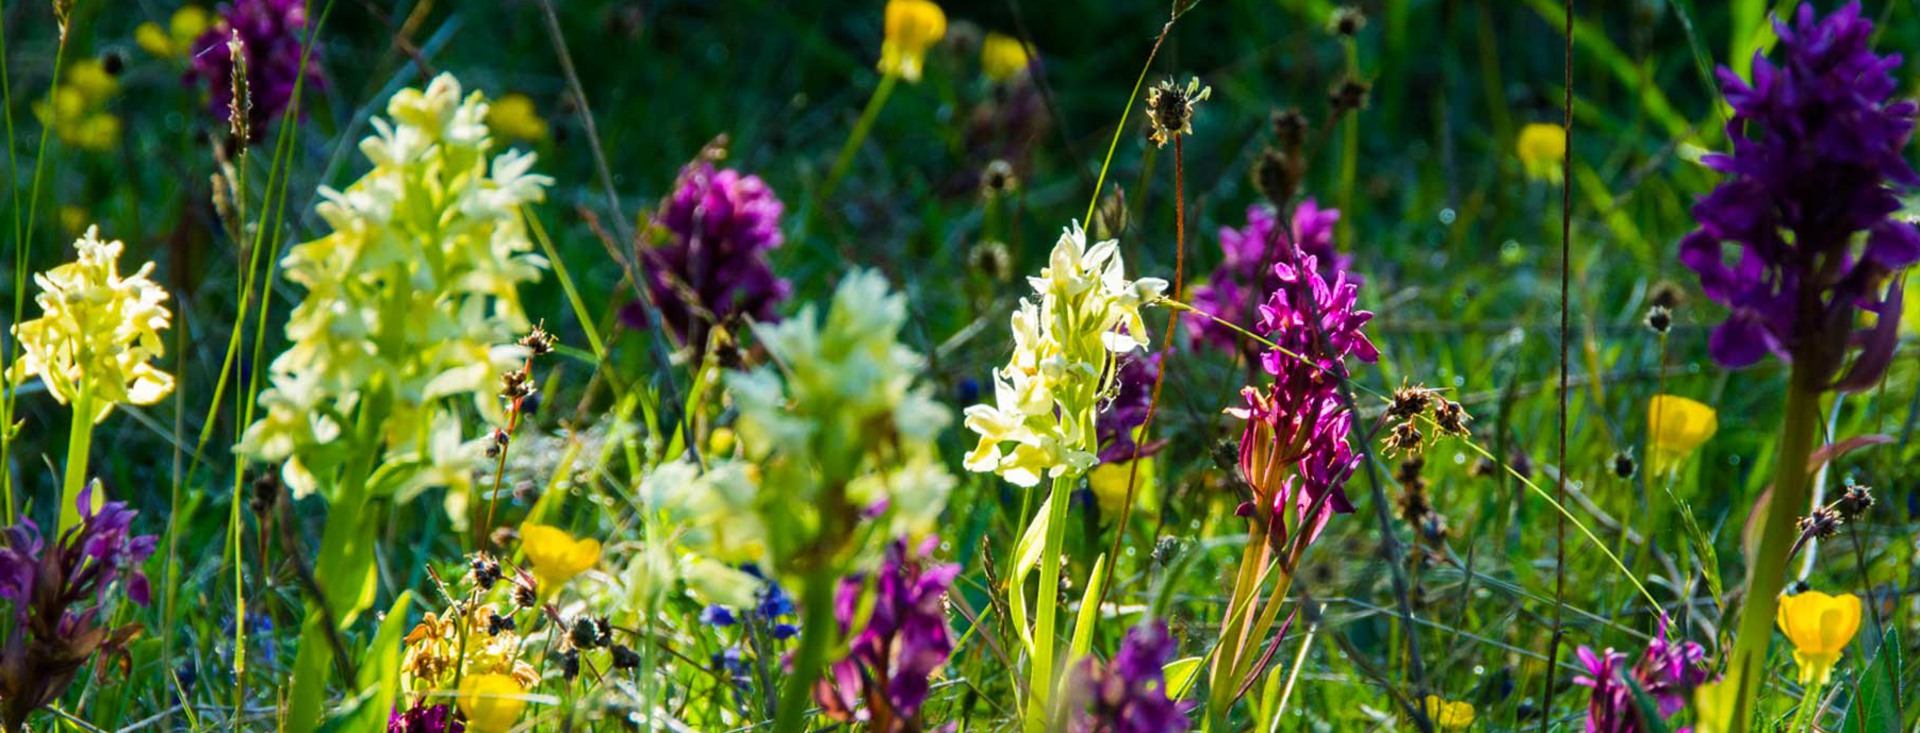 Gula och lila orkidéer omgivna av grönt gräs.